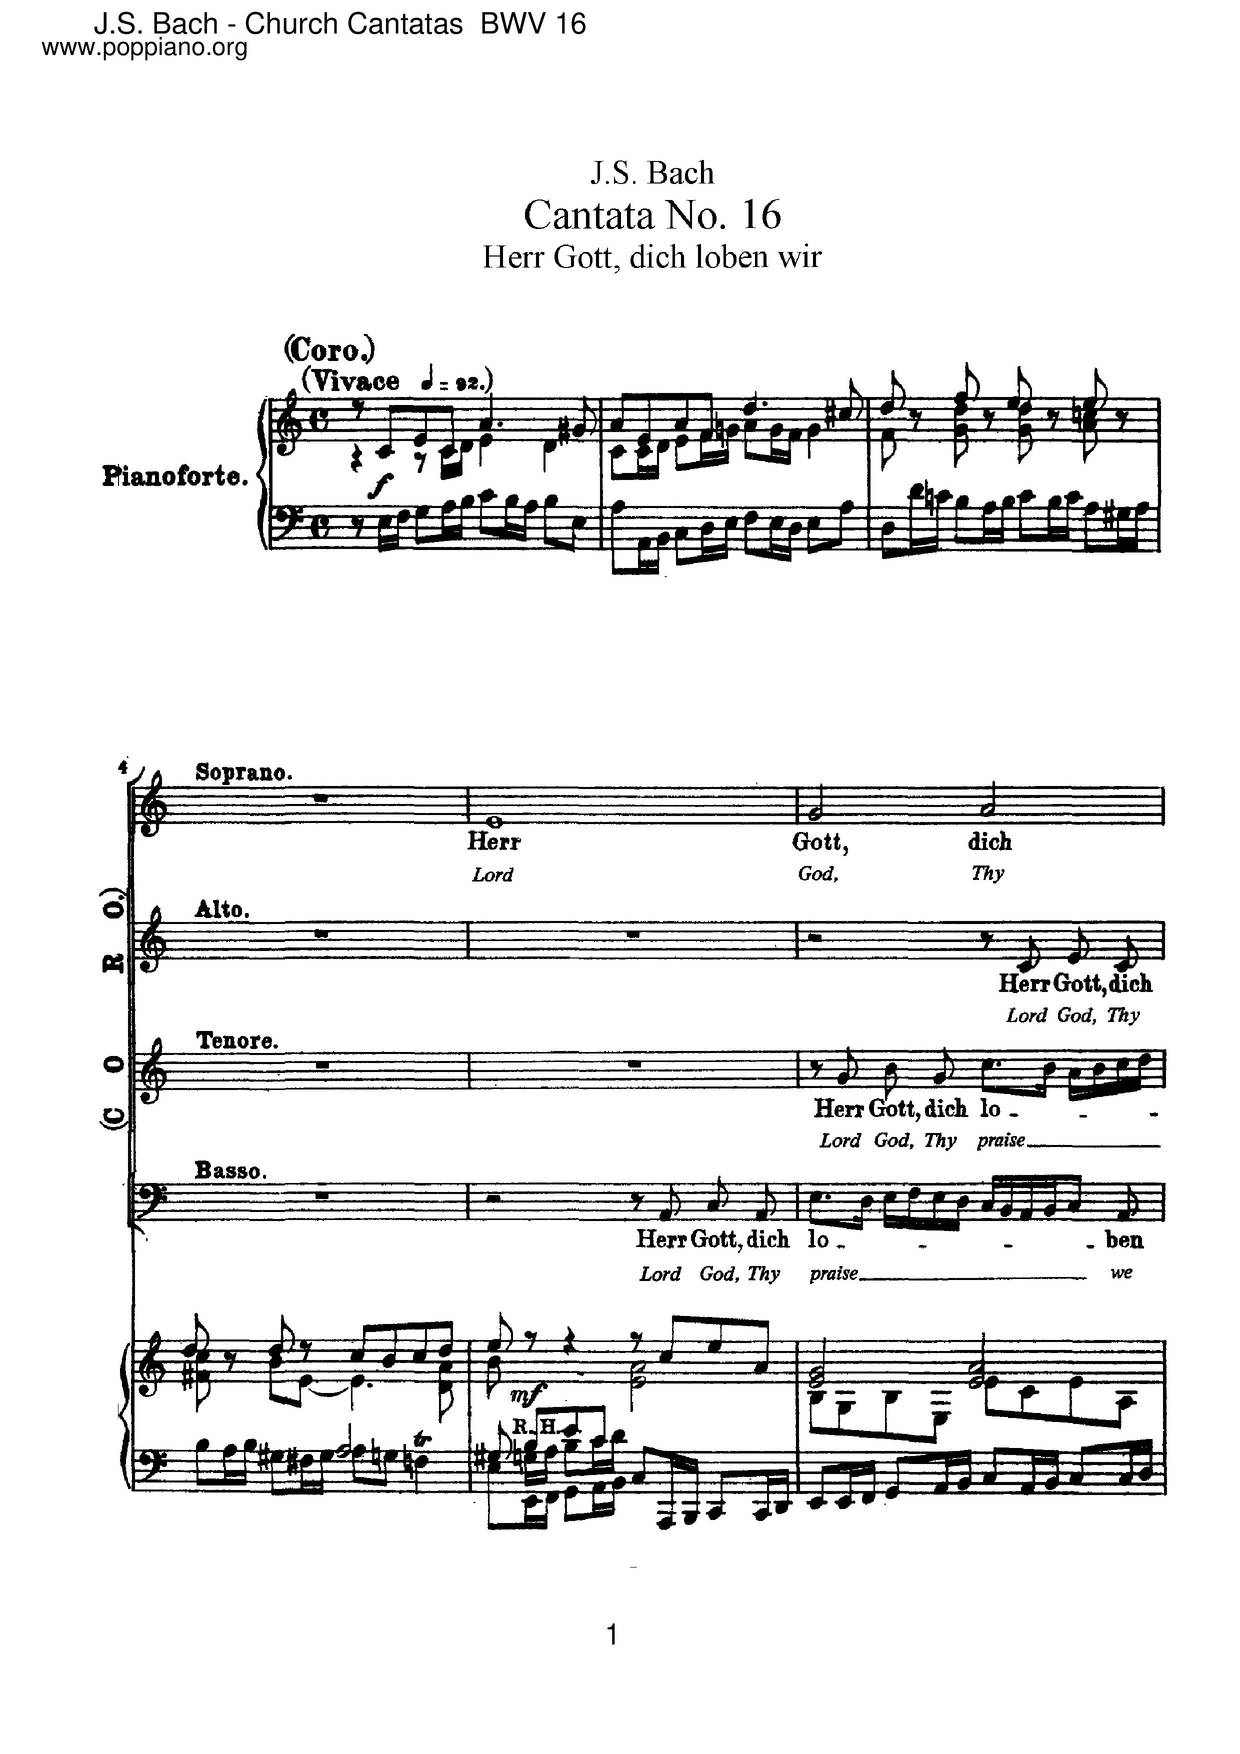 Herr Gott, Dich Loben Wir, BWV 16 Score